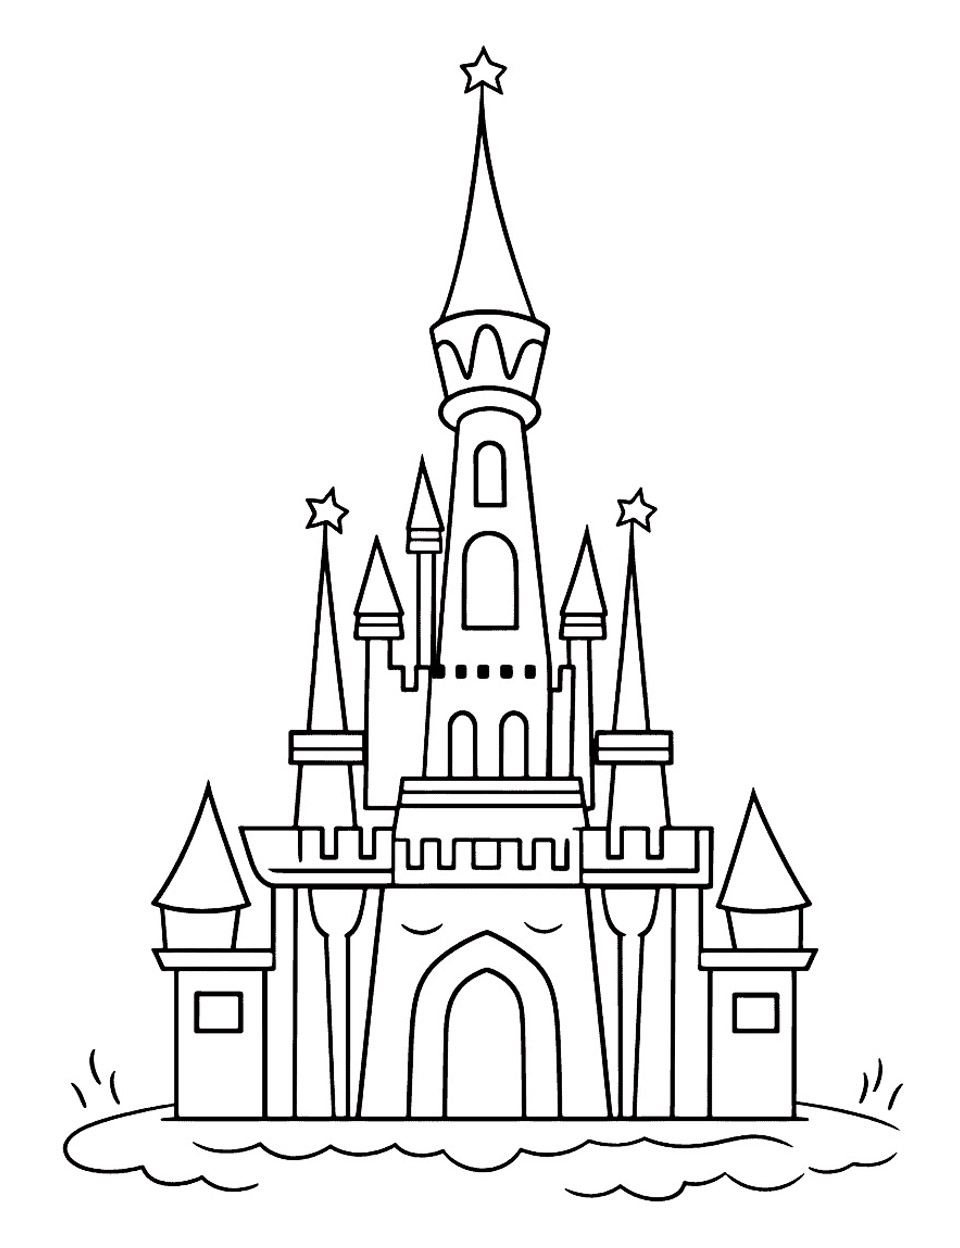 Desenho simples de um castelo de conto de fadas. Este castelo é uma versão simplificada e inspirada do castelo da Bela Adormecida.